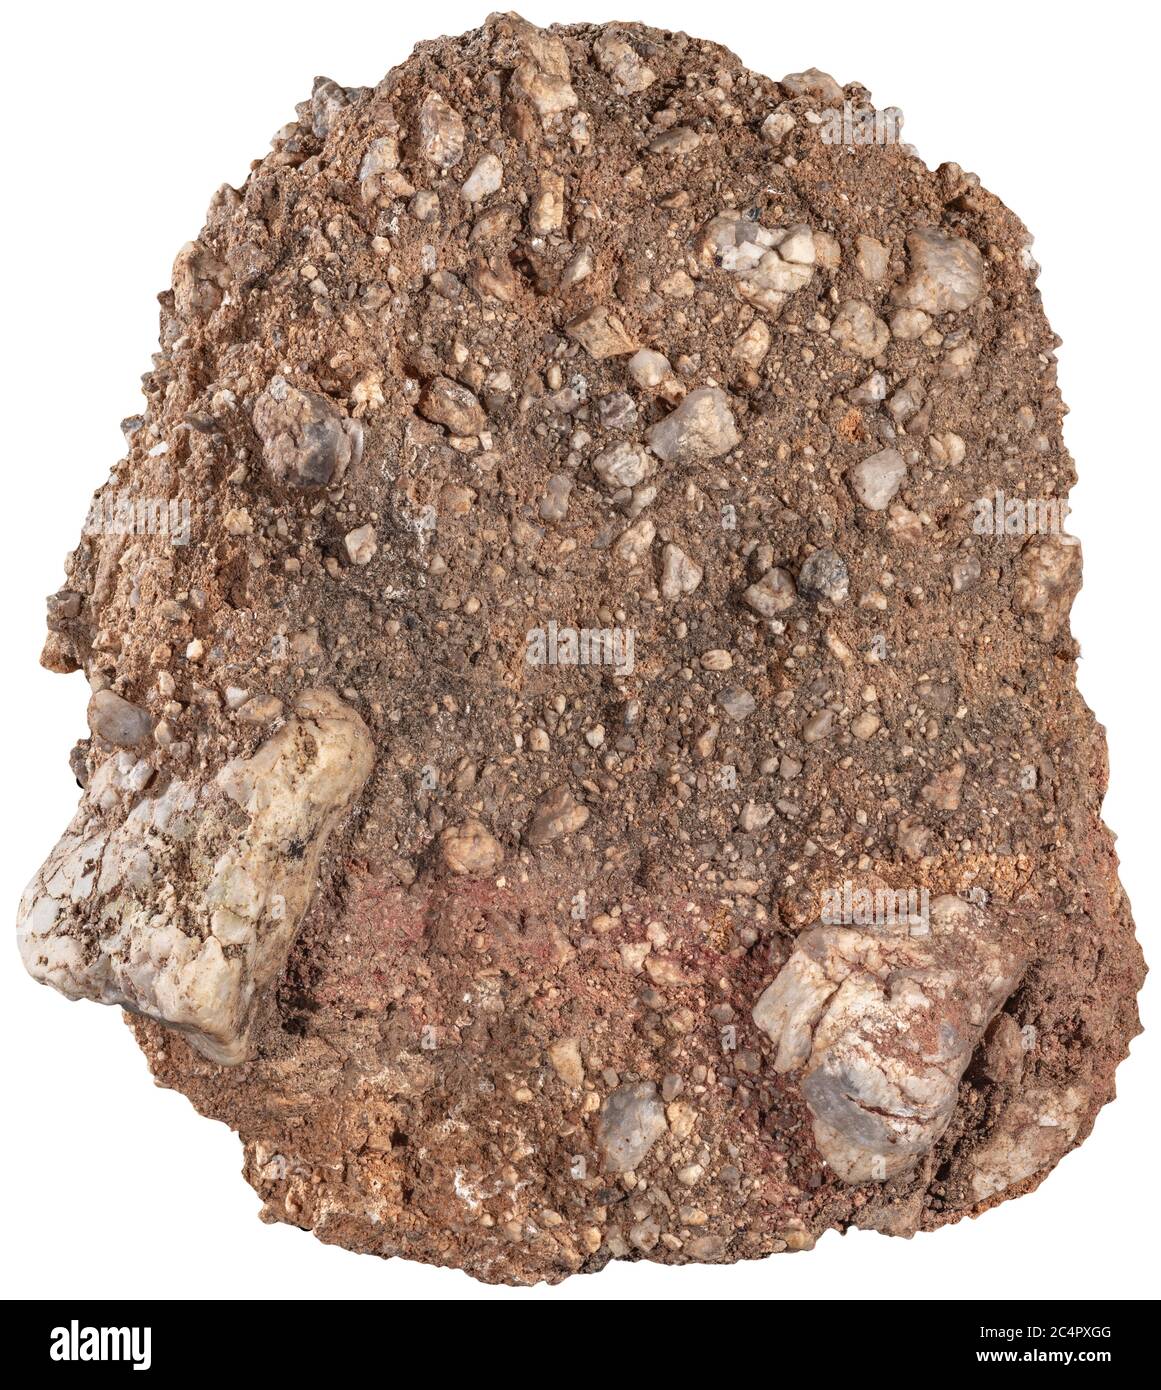 Caliche Konglomerat Felsen Caliche ist ein Sedimentgestein, ein gehärteter natürlicher Zement aus Calciumcarbonat, der andere Materialien bindet – wie Kies, san Stockfoto